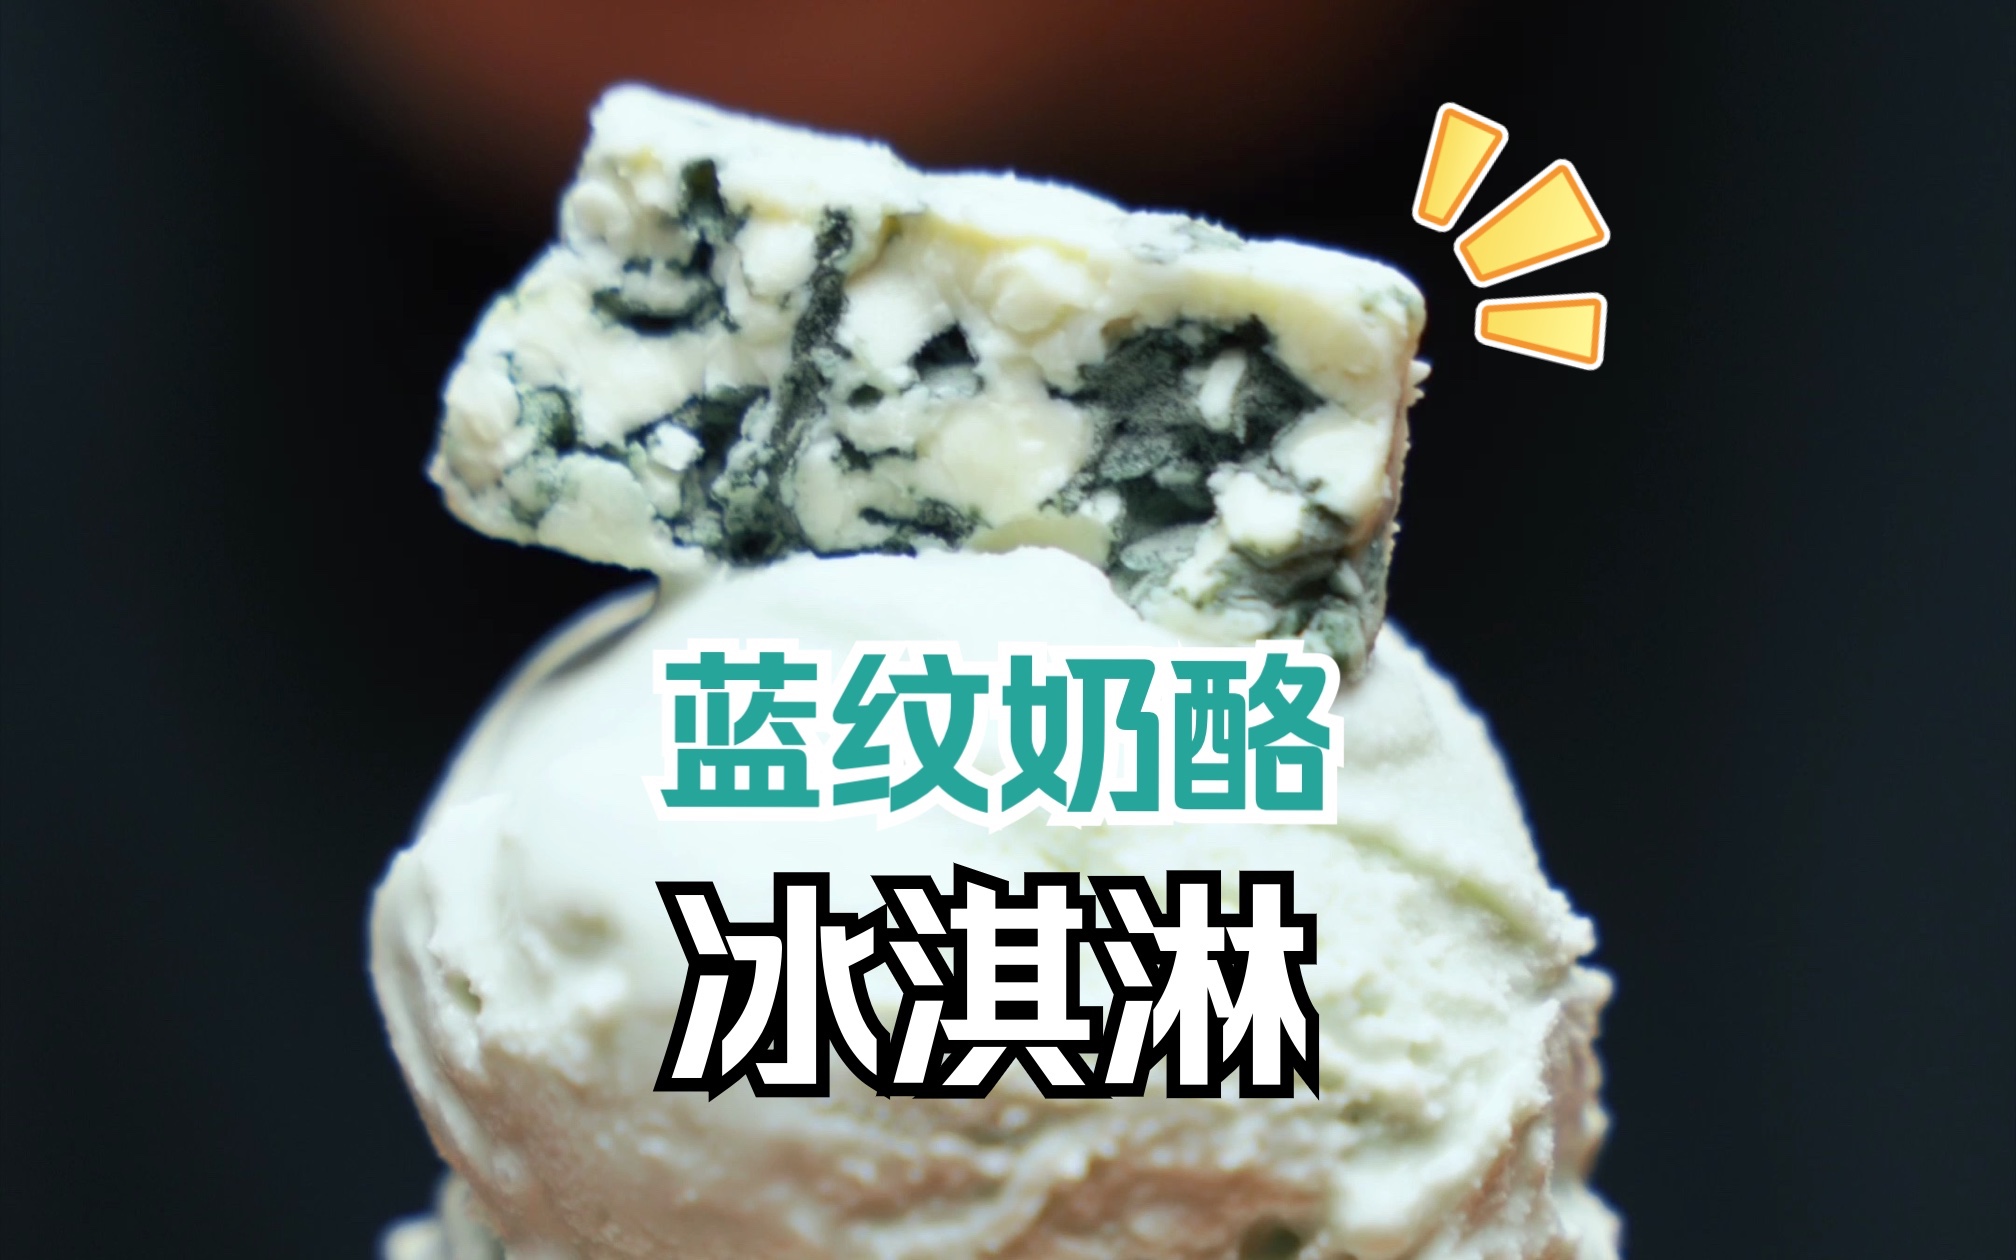 法国蓝纹奶酪法兰西布里布兰蓝波干酪乳酪块blue cheese蓝纹芝士-淘宝网